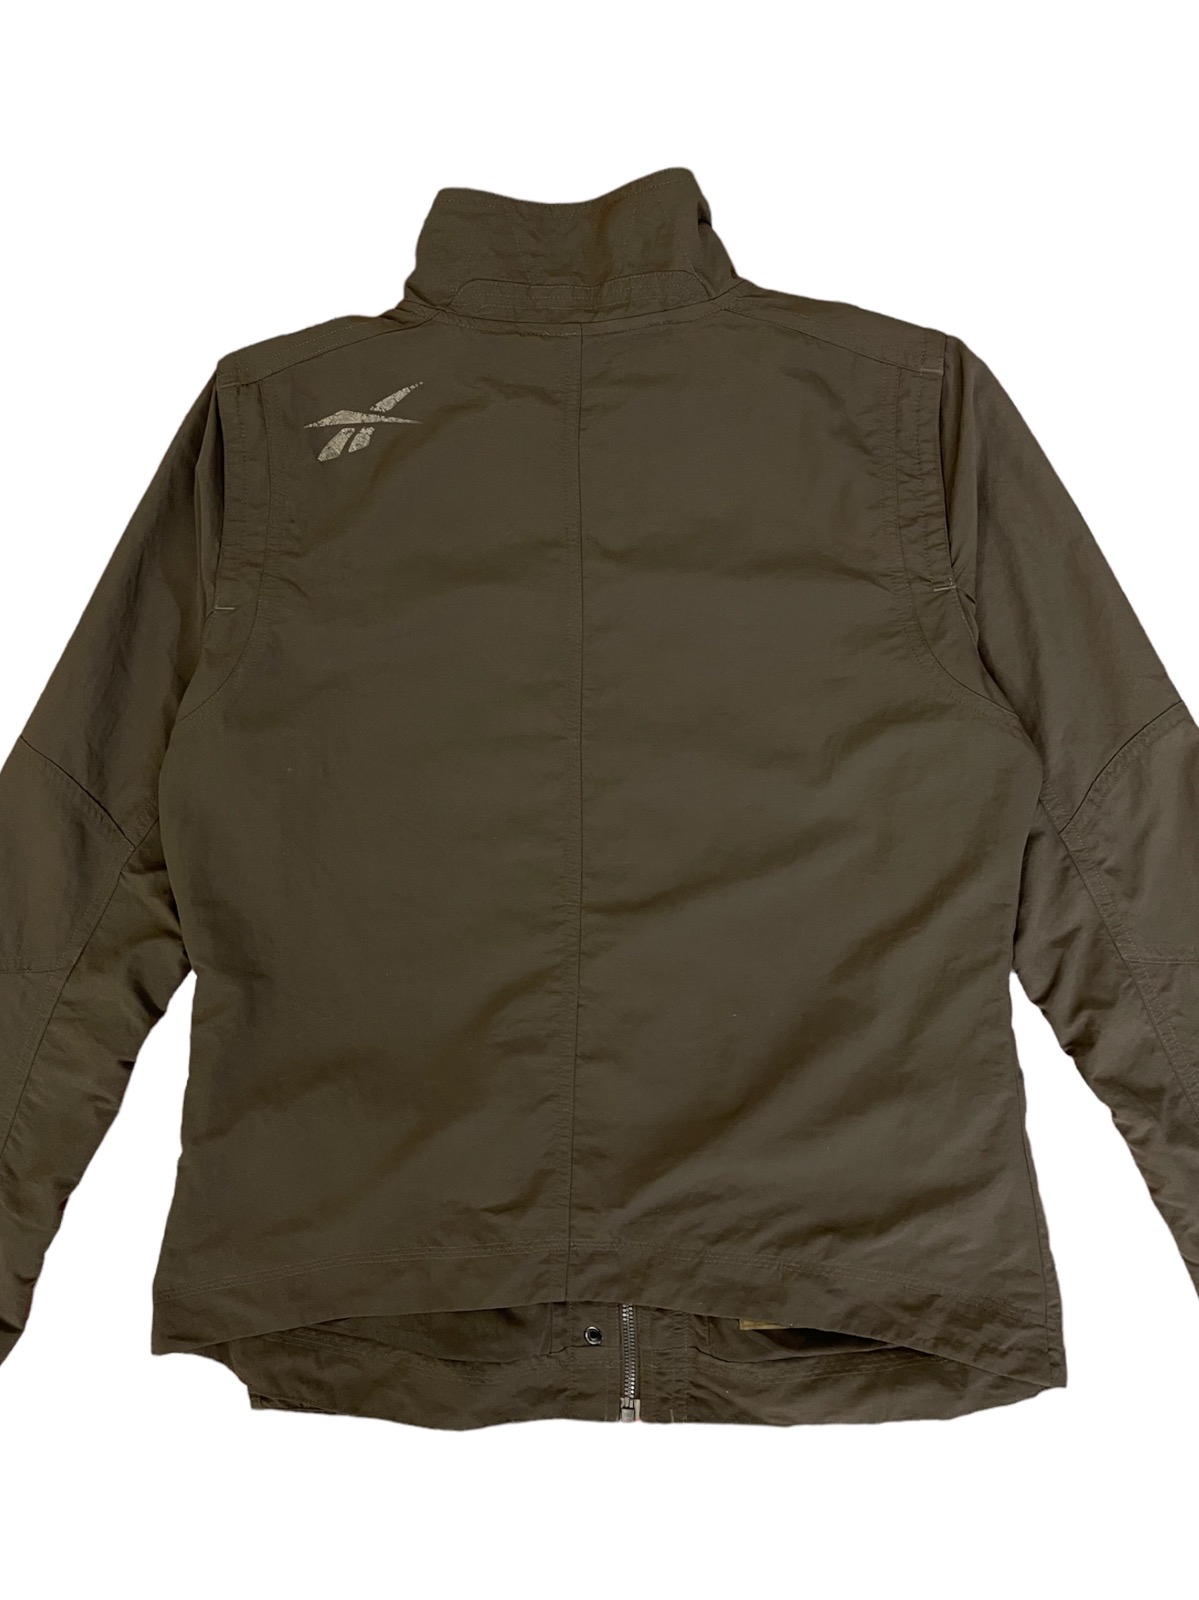 Reebook jacket women multiple pocket streetwear - 8